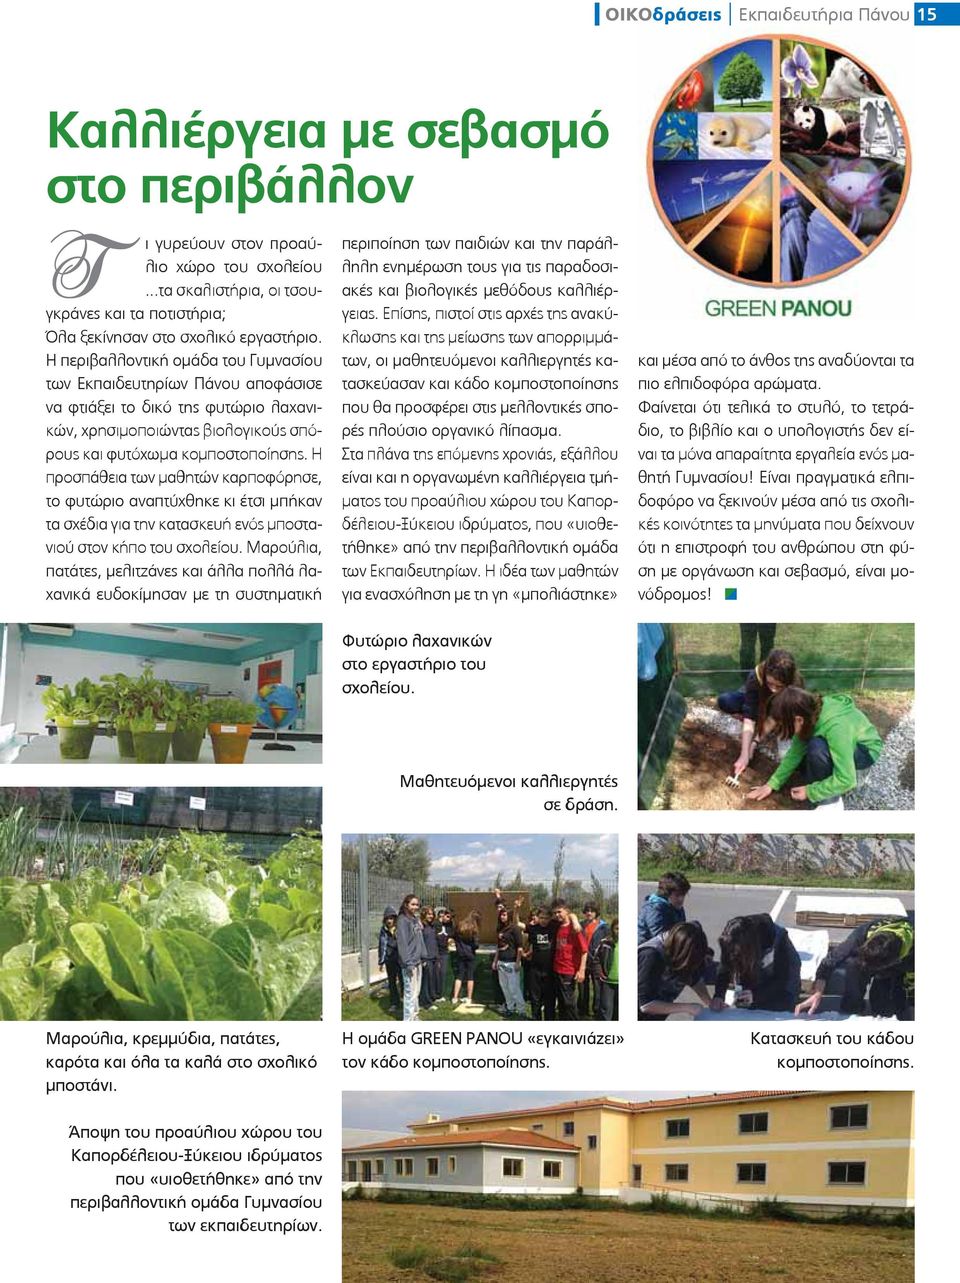 Η περιβαλλοντική ομάδα του Γυμνασίου των Εκπαιδευτηρίων Πάνου αποφάσισε να φτιάξει το δικό της φυτώριο λαχανικών, χρησιμοποιώντας βιολογικούς σπόρους και φυτόχωμα κομποστοποίησης.